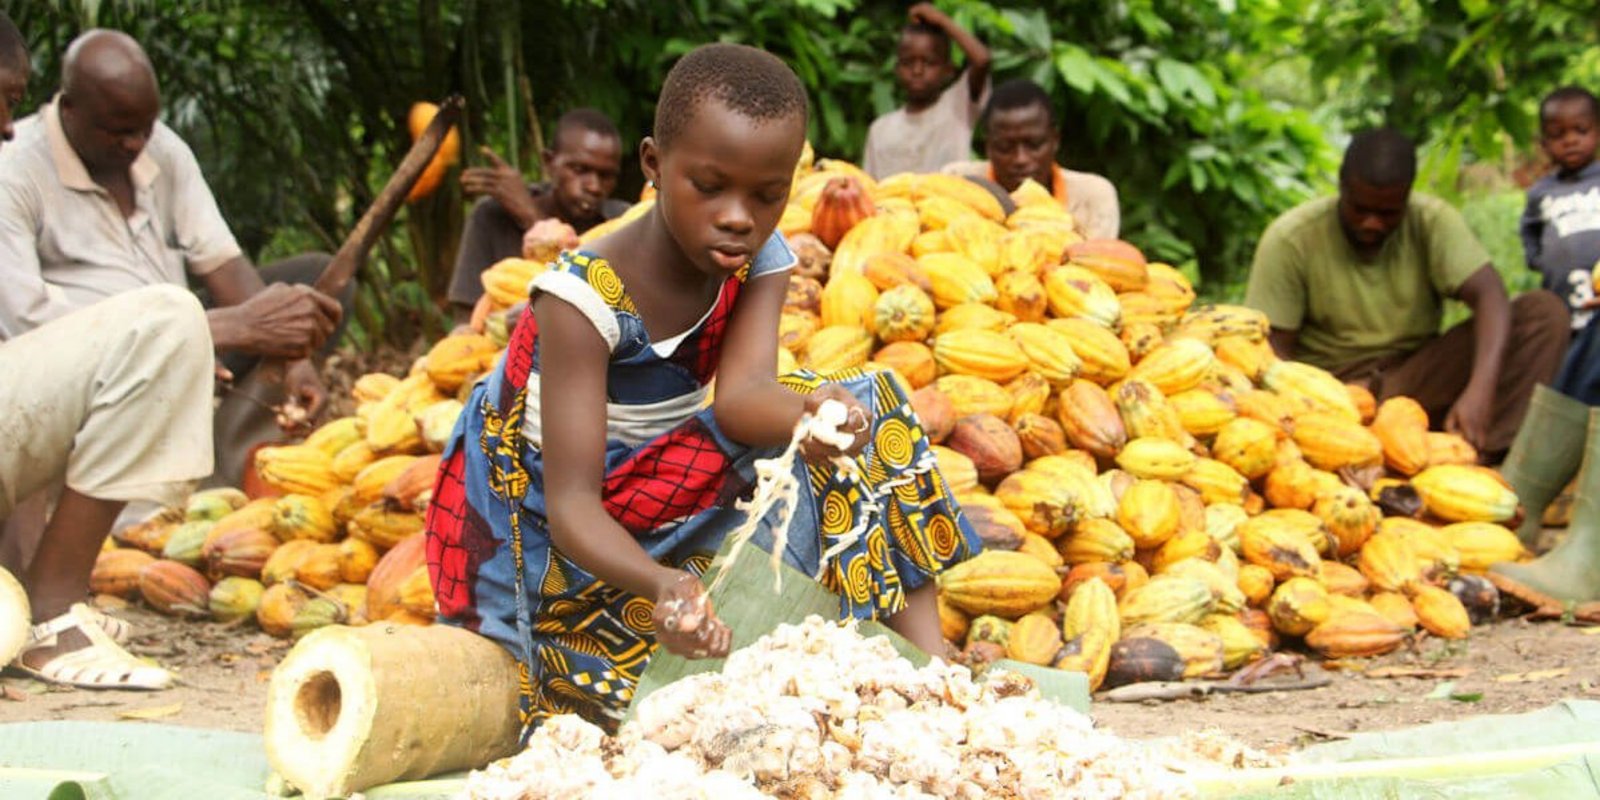 Eine junge Frau hilft bei der Kakao-Verarbeitung in Afrika.